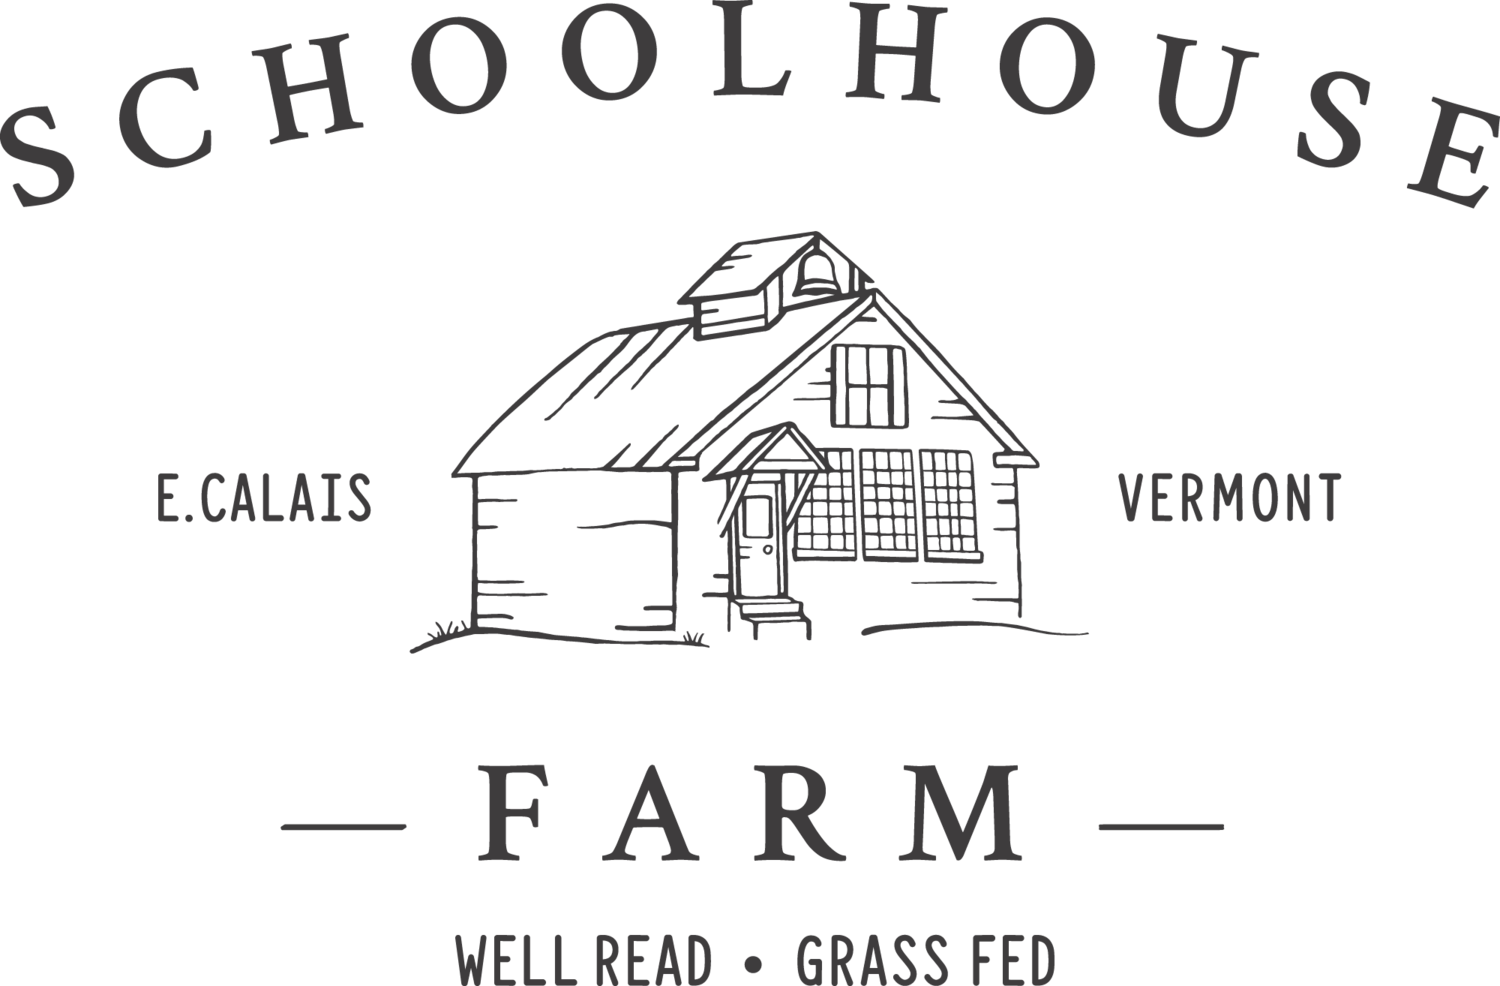 Schoolhouse Farm